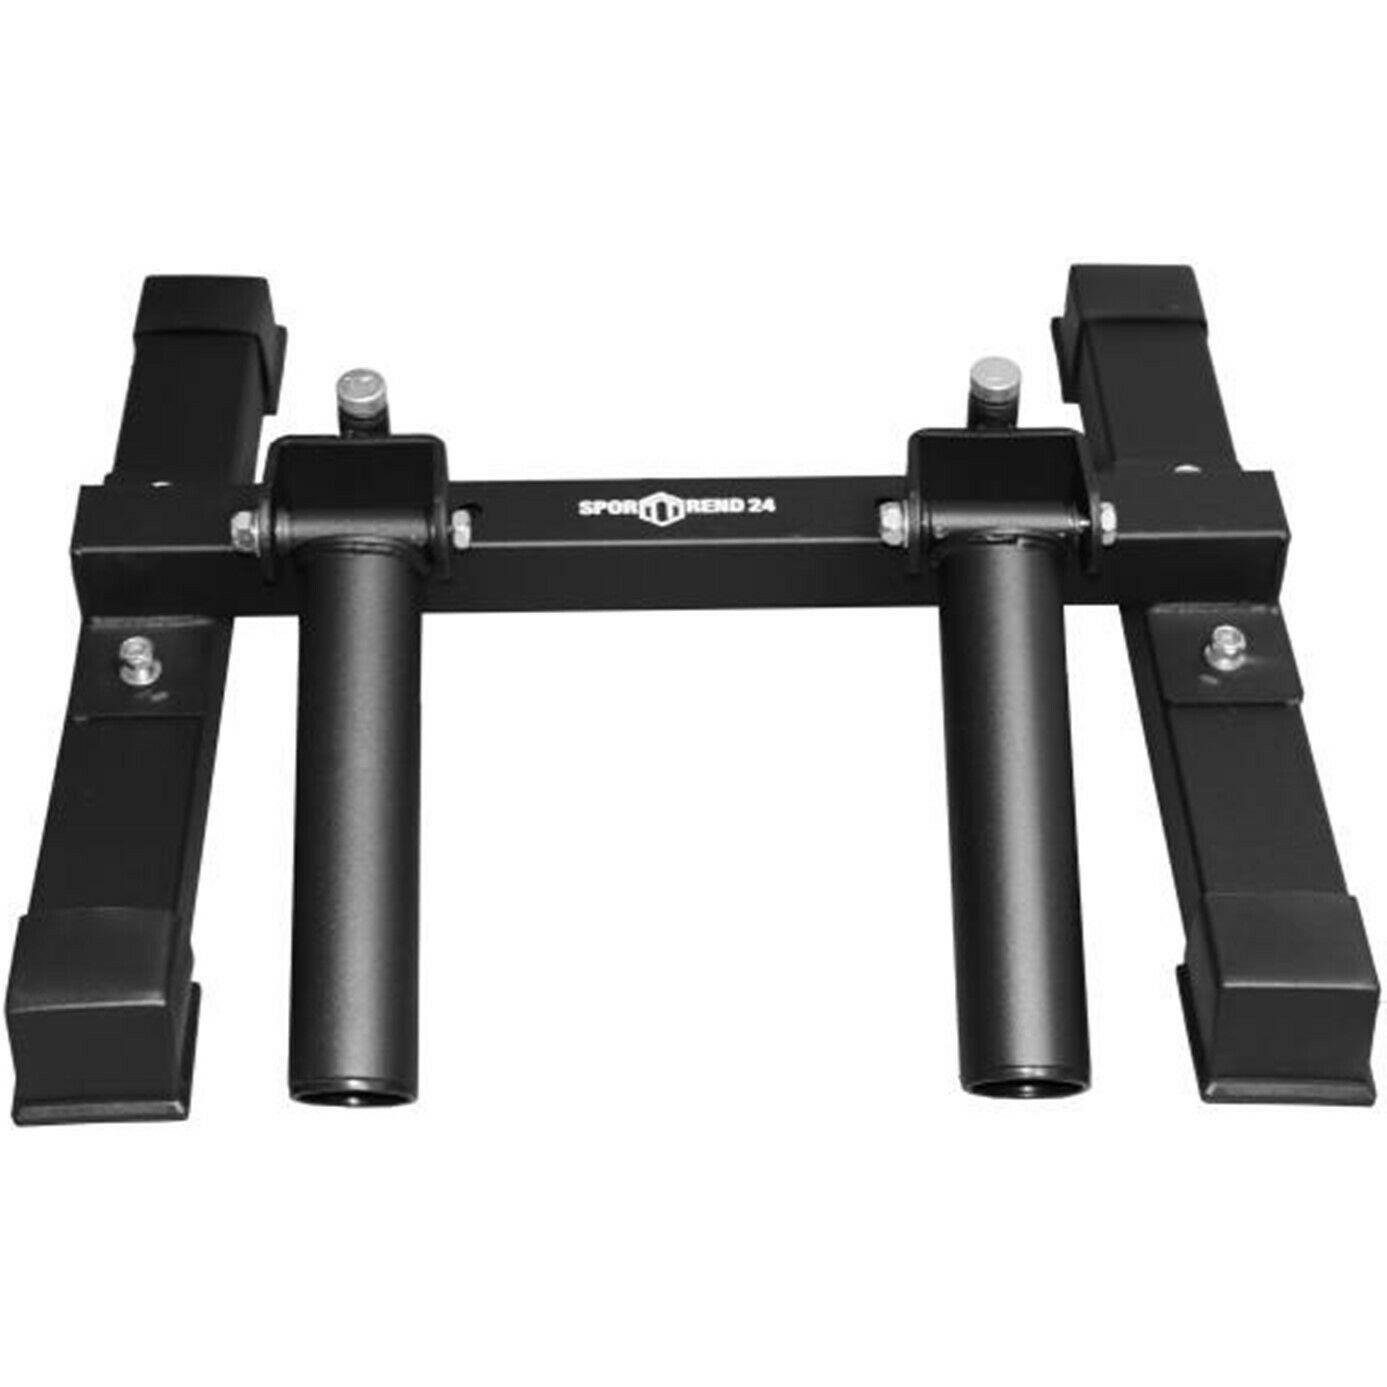 Sporttrend 24 Core-Trainer T-Bar Row Langhanteltrainer für 50mm, schwenkbar